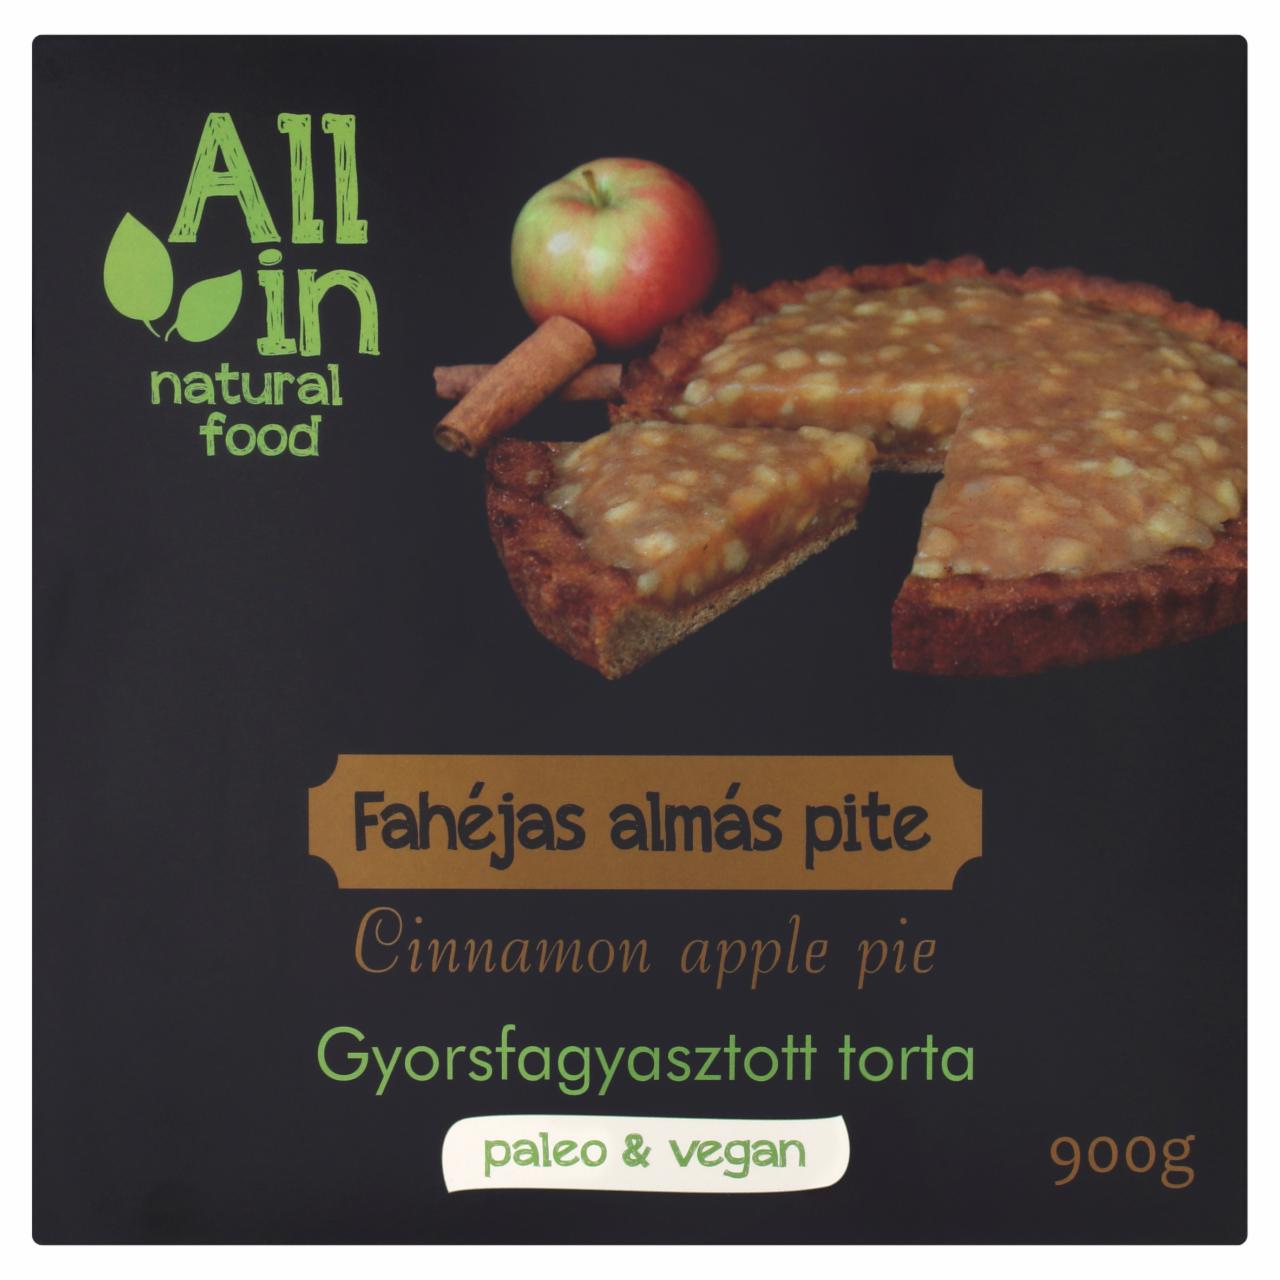 Képek - ALL IN natural food gyorsfagyasztott fahéjas almás pite torta 900 g